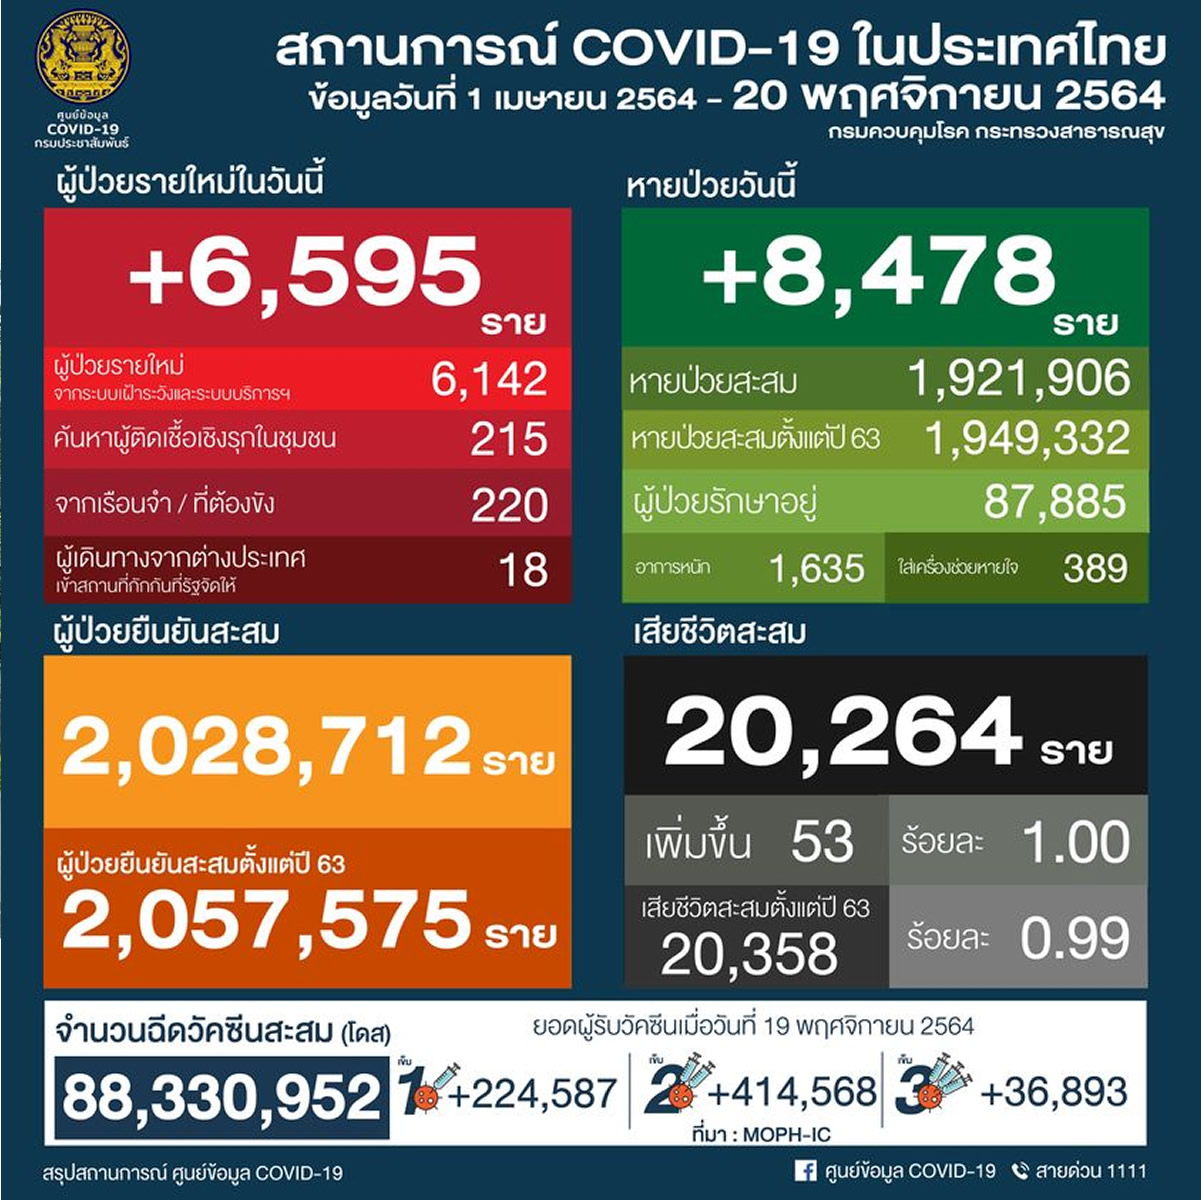 タイ 6,595人陽性 53人死亡／バンコク 768人陽性 ／チェンマイ 344人陽性［2021年11月20日発表］